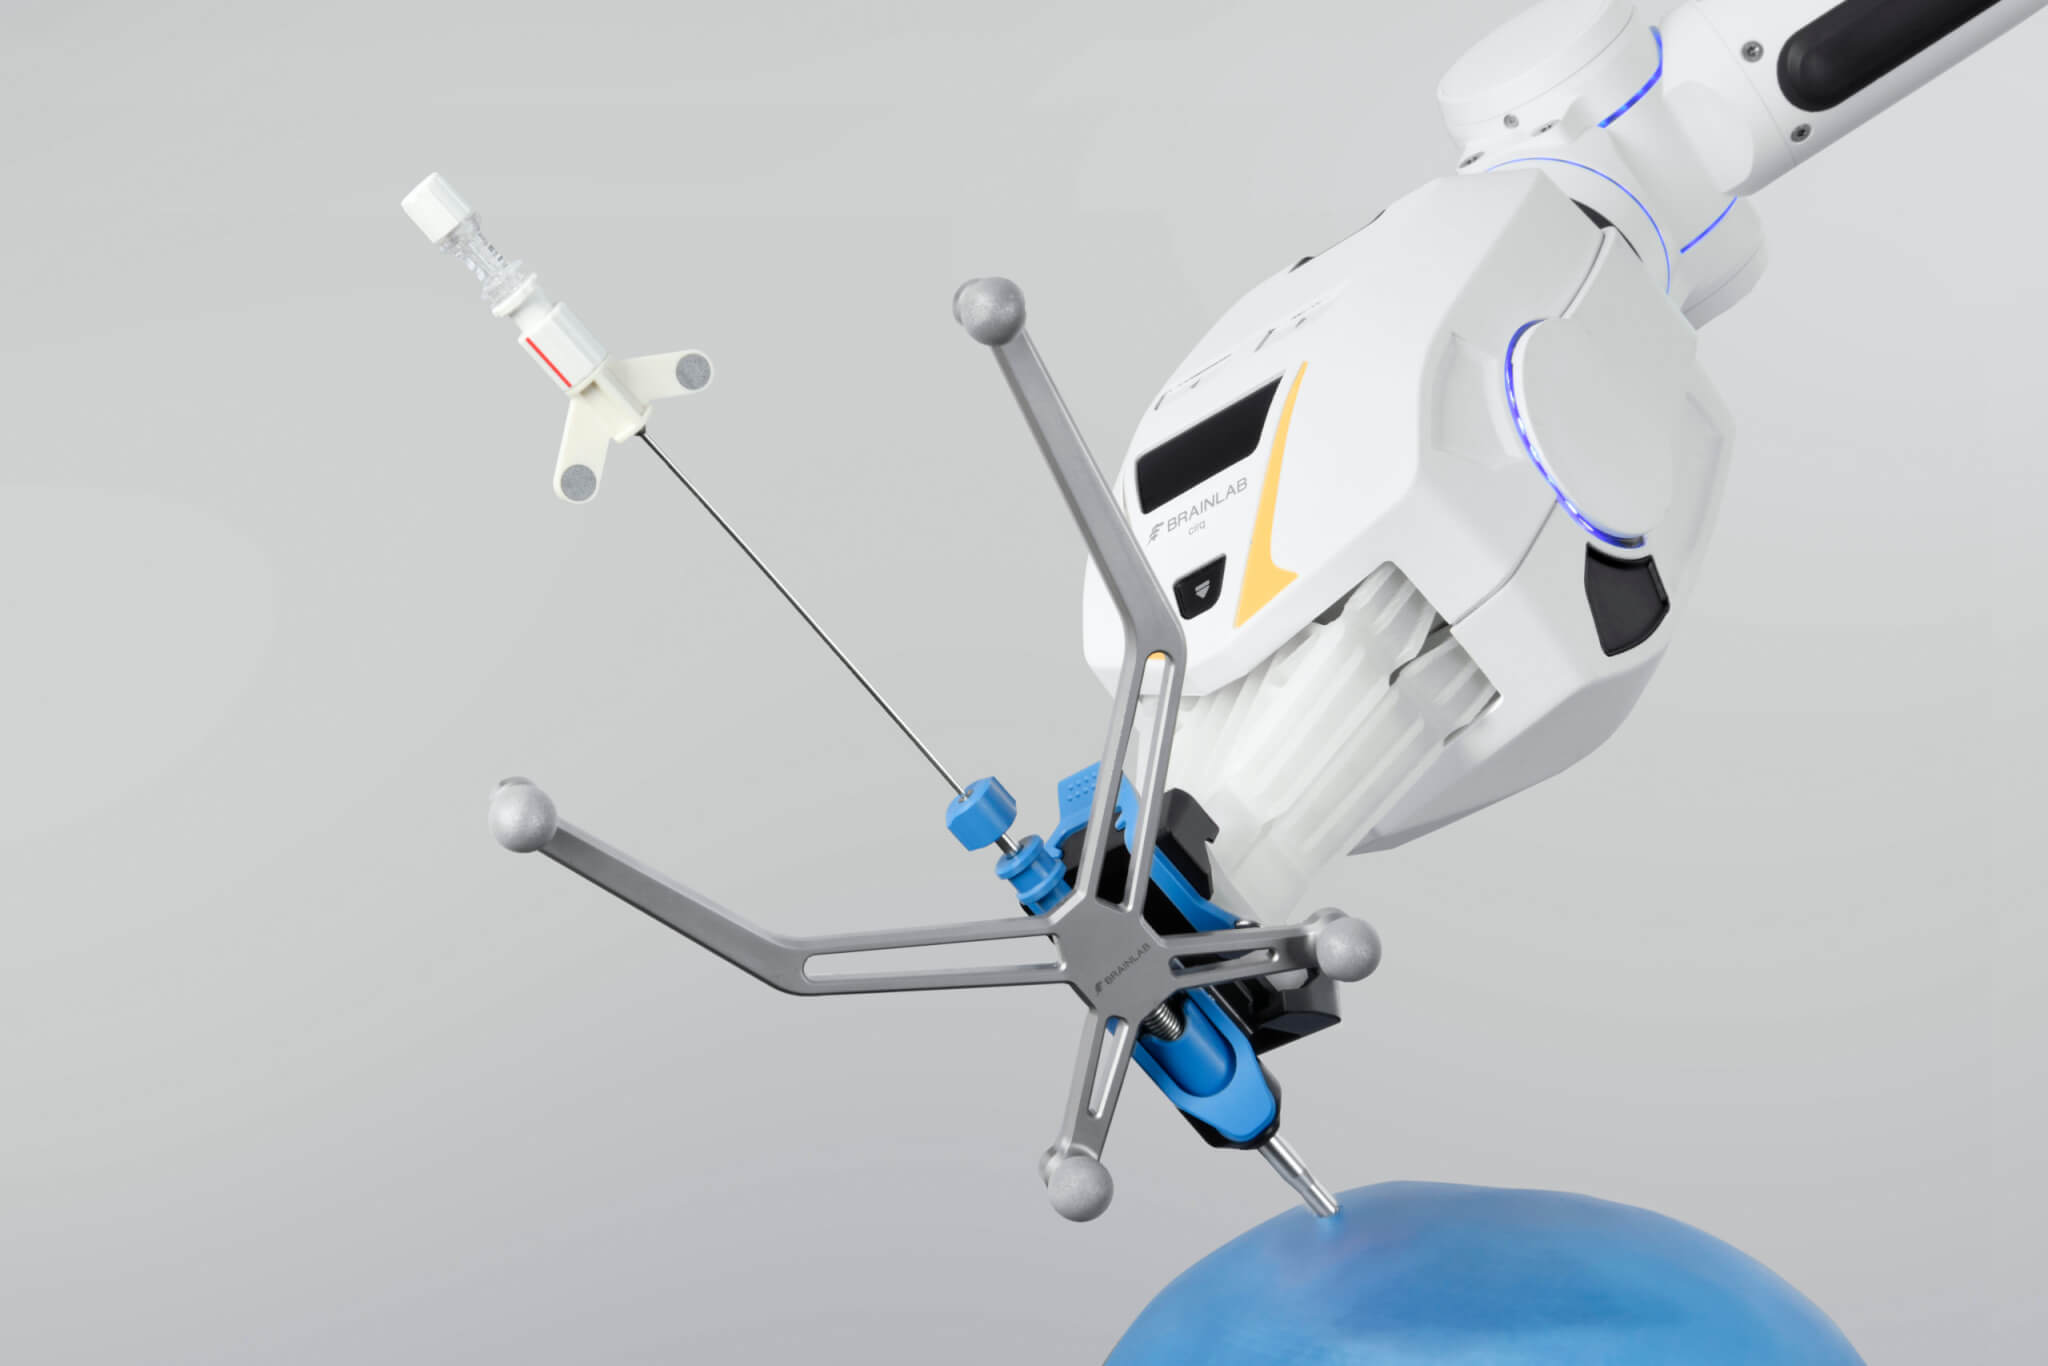 Модуль для краниальной хирургии роботизированной системы хирургических кронштейнов держит навигируемую иглу для биопсии, «паря» над голубым изображением черепа на светло-сером фоне